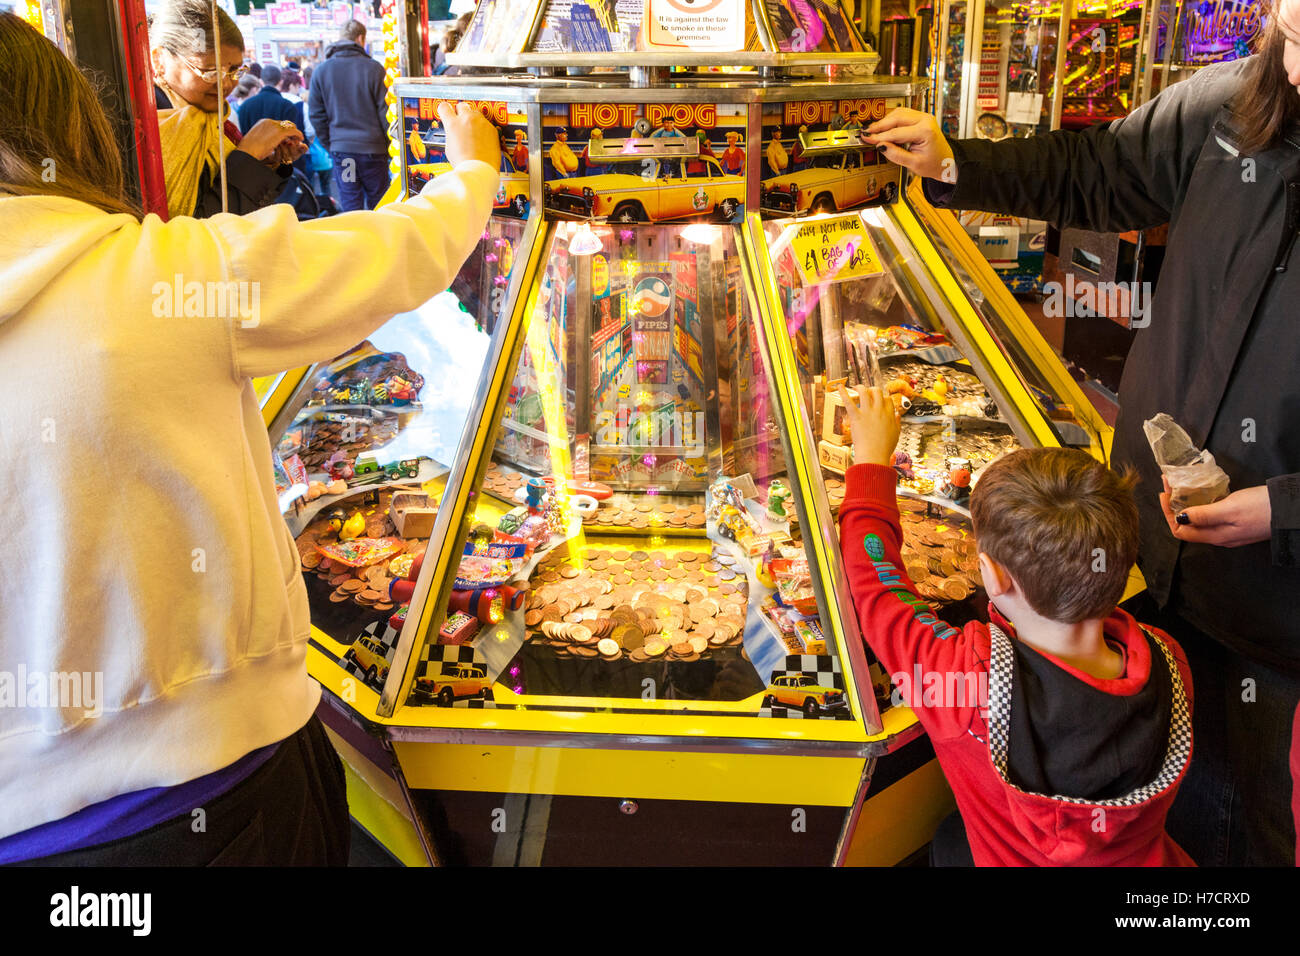 Personnes jouant des machines à sous dans une arcade amusements à Goose Fair, Nottingham, England, UK Banque D'Images